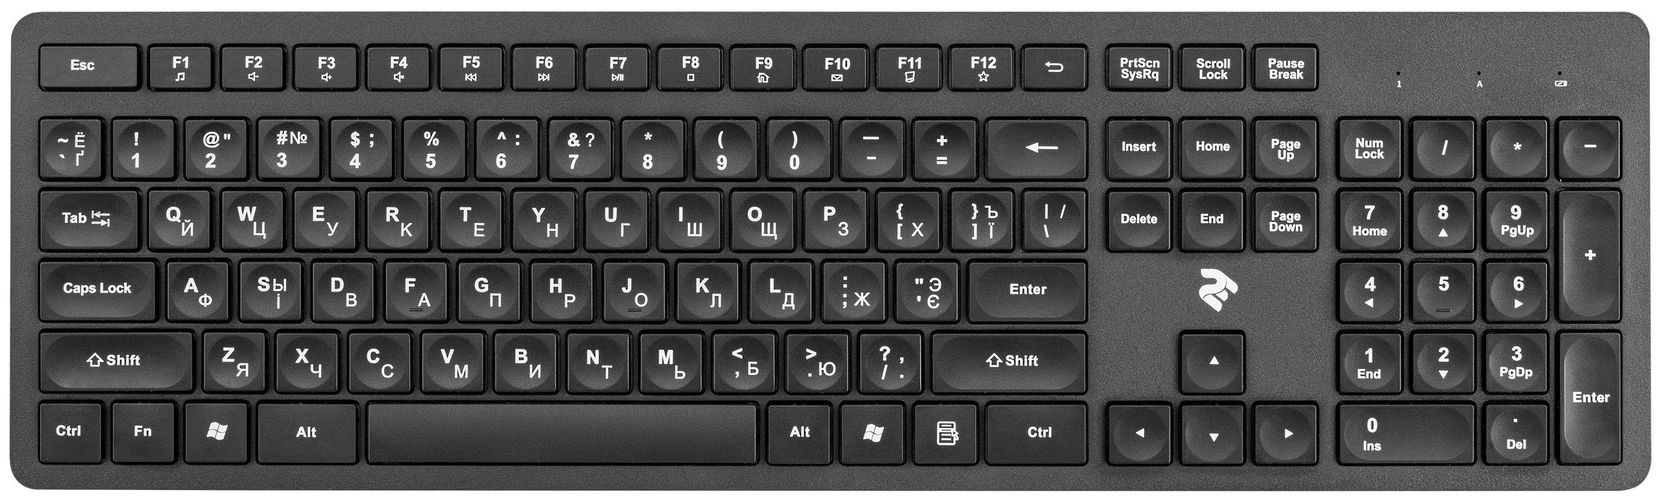 Комплект (мышь + клавиатура) 2E MK420, Черный, купить недорого